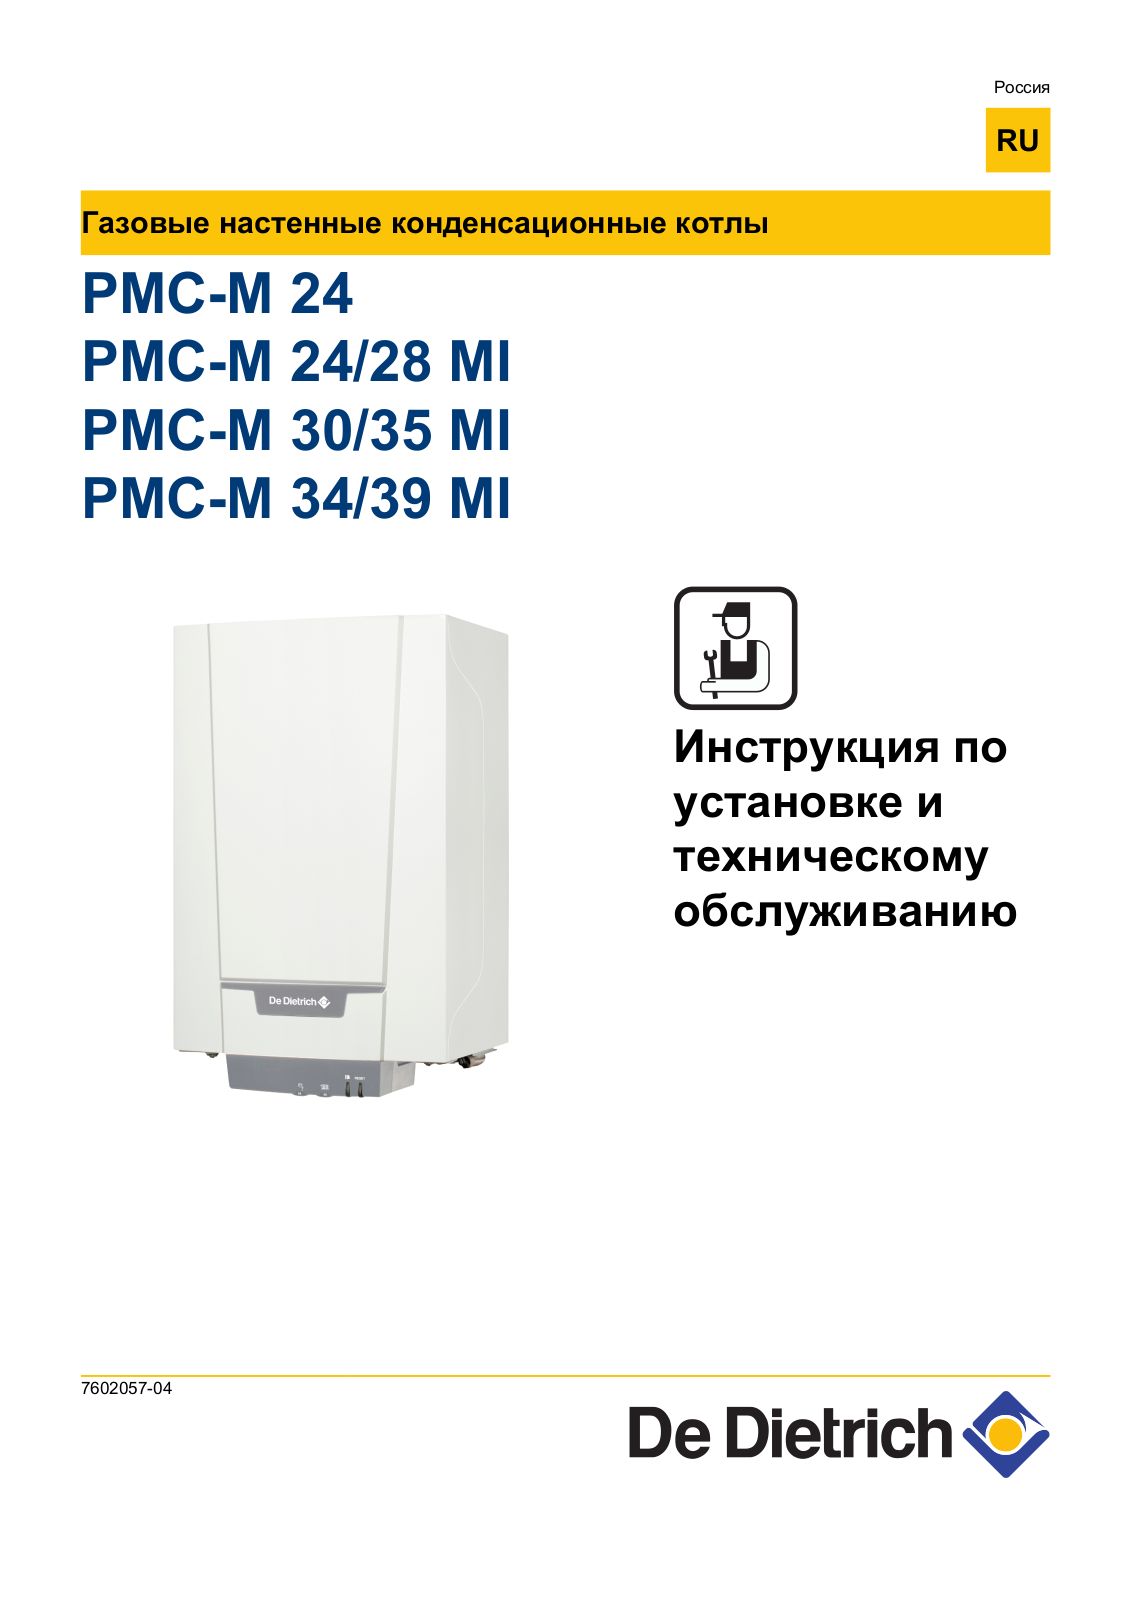 De dietrich PMC-M 24 User Manual